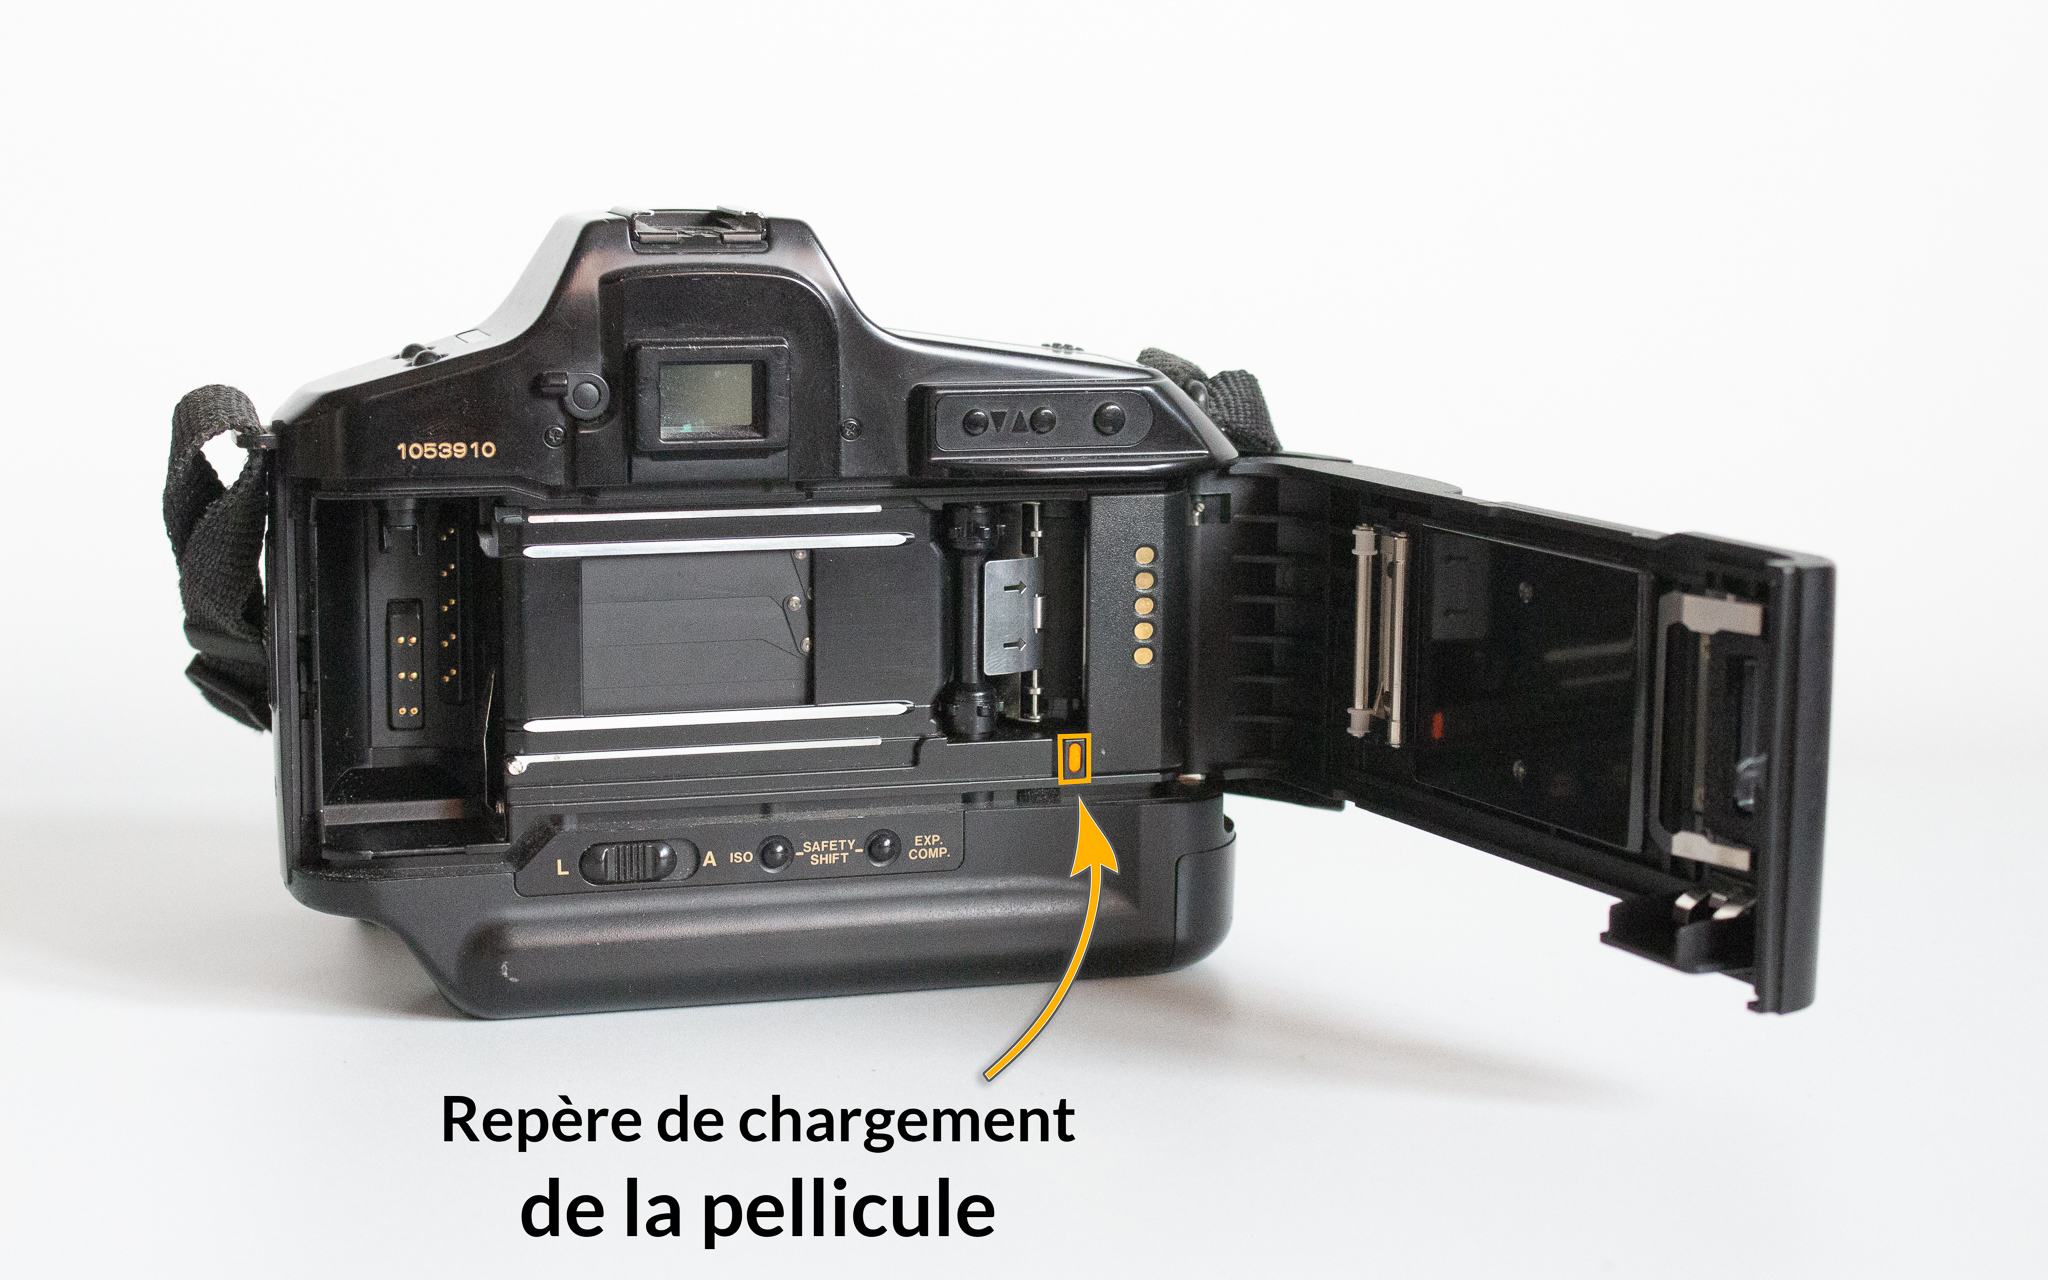 Photographie d'un Canon T90 avec un élément nommé et situé : le repère de chargement de la pellicule, un petit carré jaune situé à droite de l'appareil